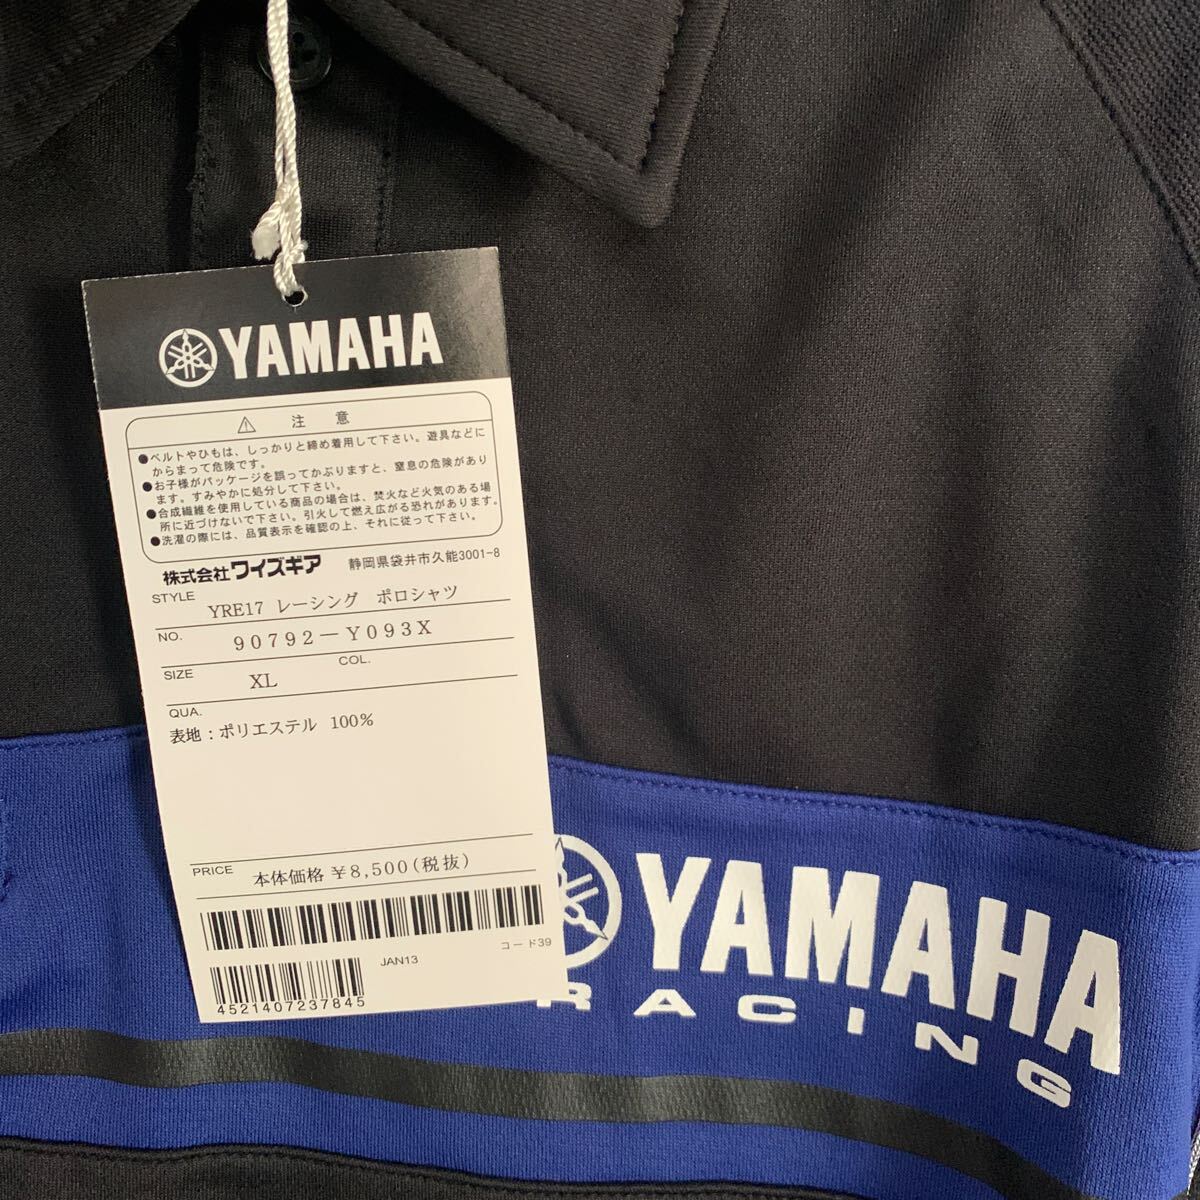  новый товар женский Yamaha (YAMAHA) рубашка-поло с коротким рукавом Yamaha рейсинг YRE17 рейсинг рубашка-поло XL размер стоимость доставки 230 иен анонимность рассылка 